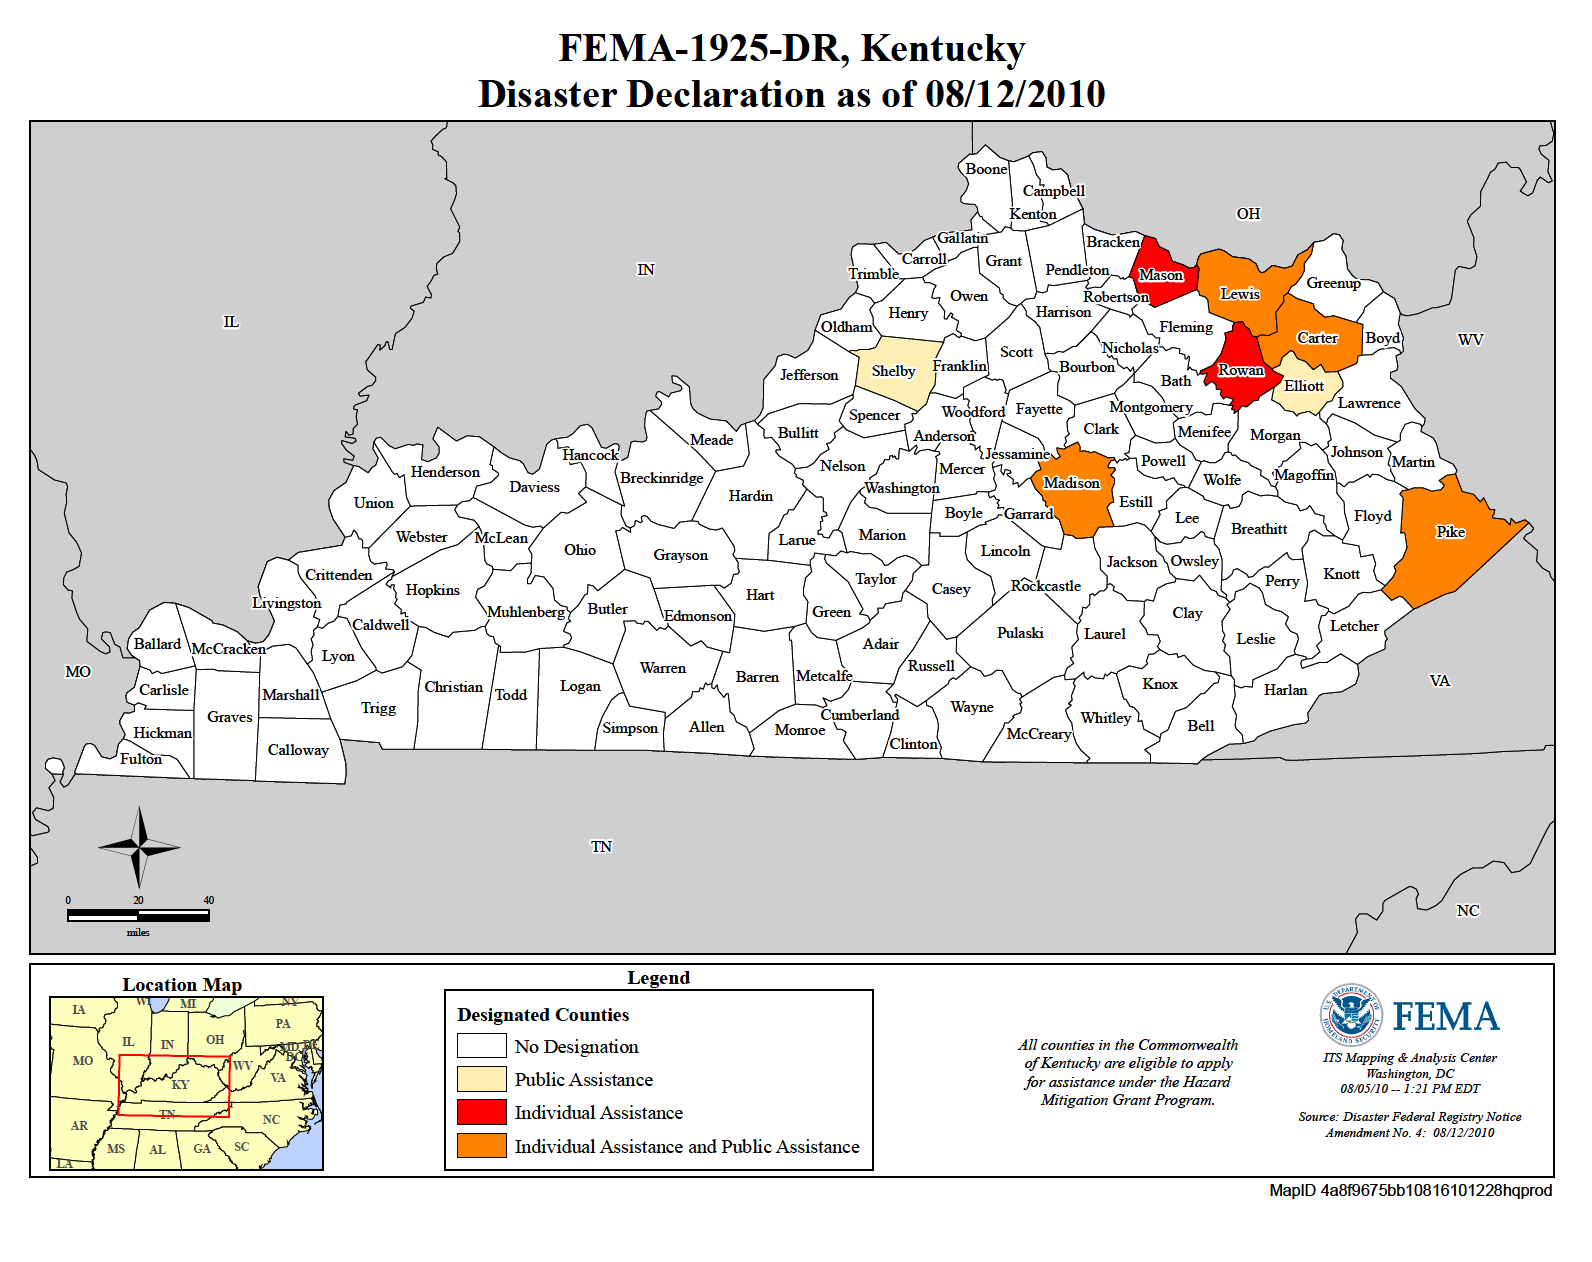 Kentucky Severe Storms, Flooding, And Mudslides (DR-1925-KY) | FEMA.gov